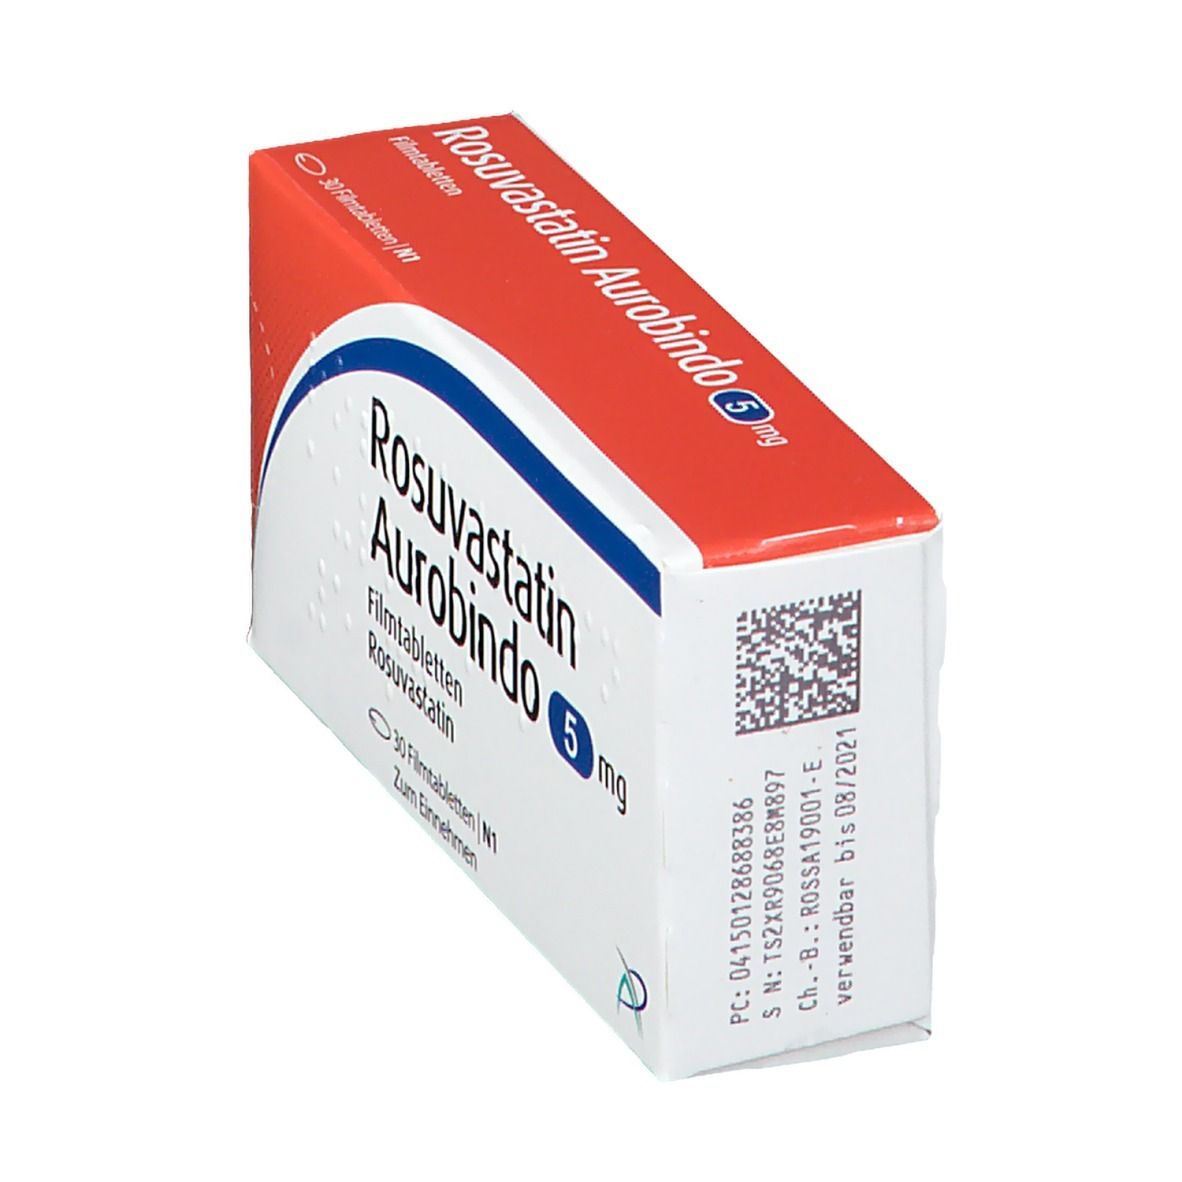 Rosuvastatin Aurobindo 5 mg